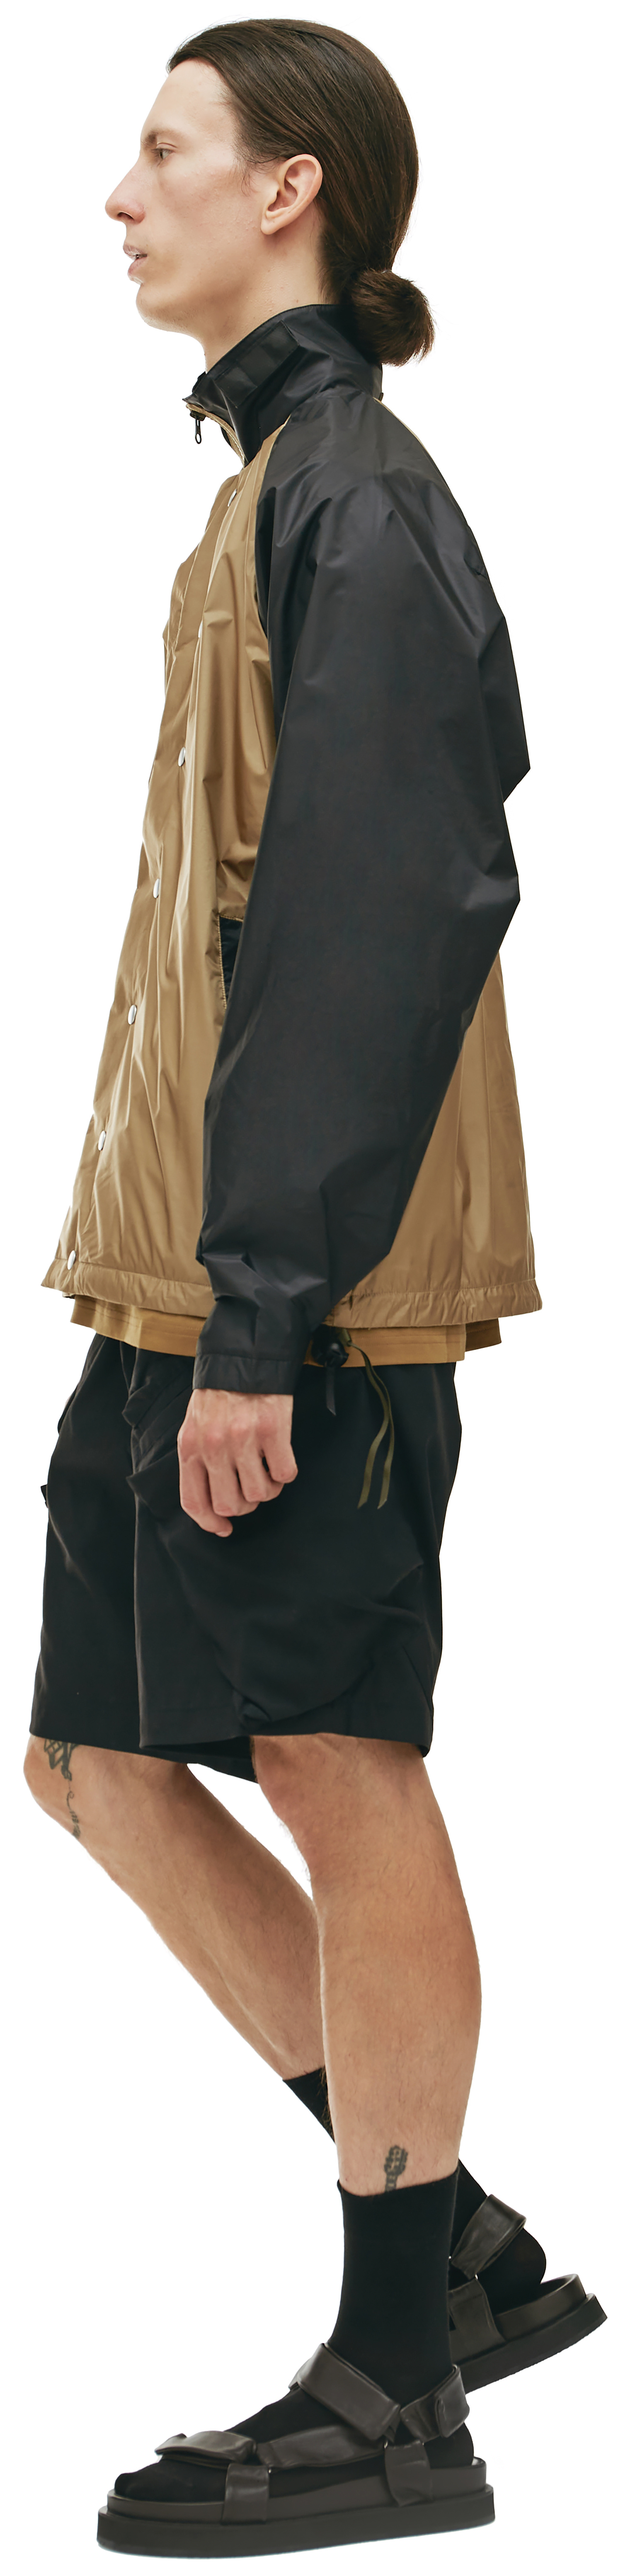 Acronym J95 two-tone jacket